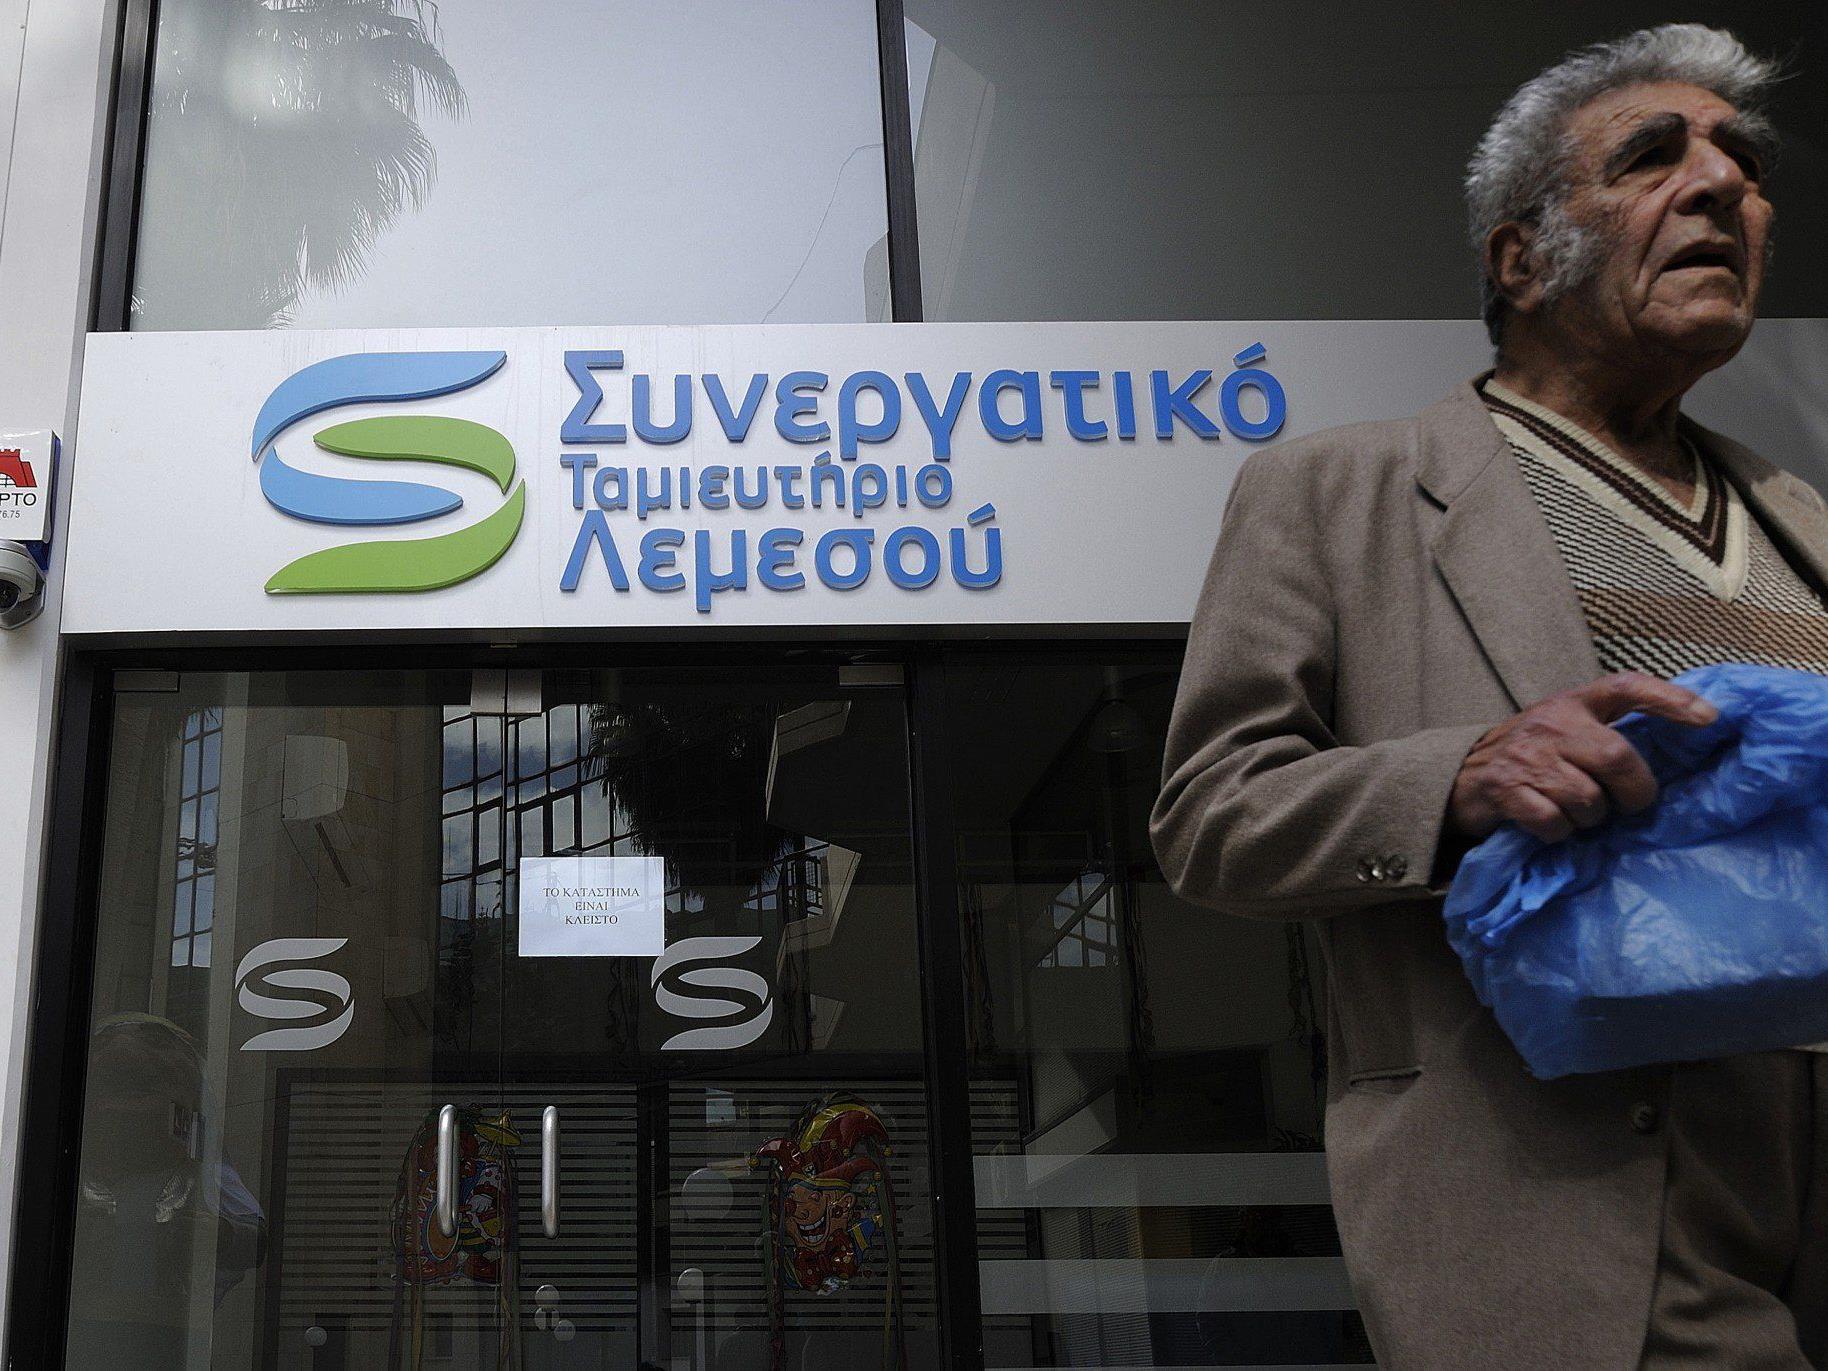 Zwangsabgabe für Bankkunden in Zypern: "Das ist eine Katastrophe".